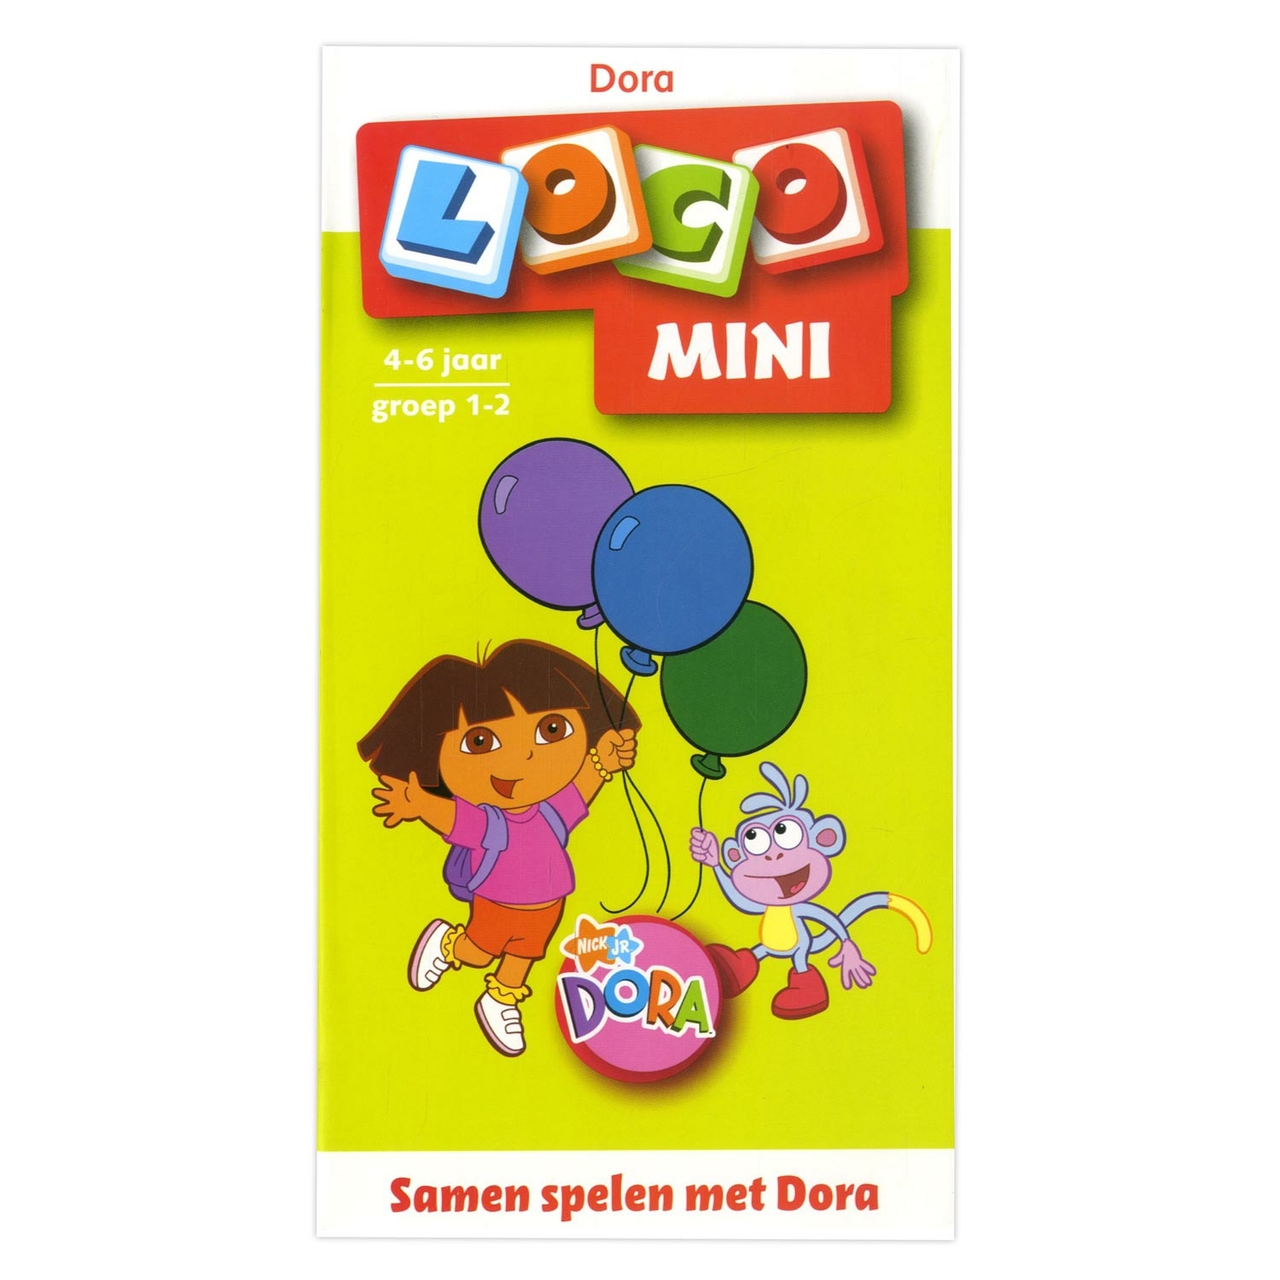 Slecht barricade binair Mini Loco - Samen Spelen met Dora (4-6) - Het Speelgoedpaleis